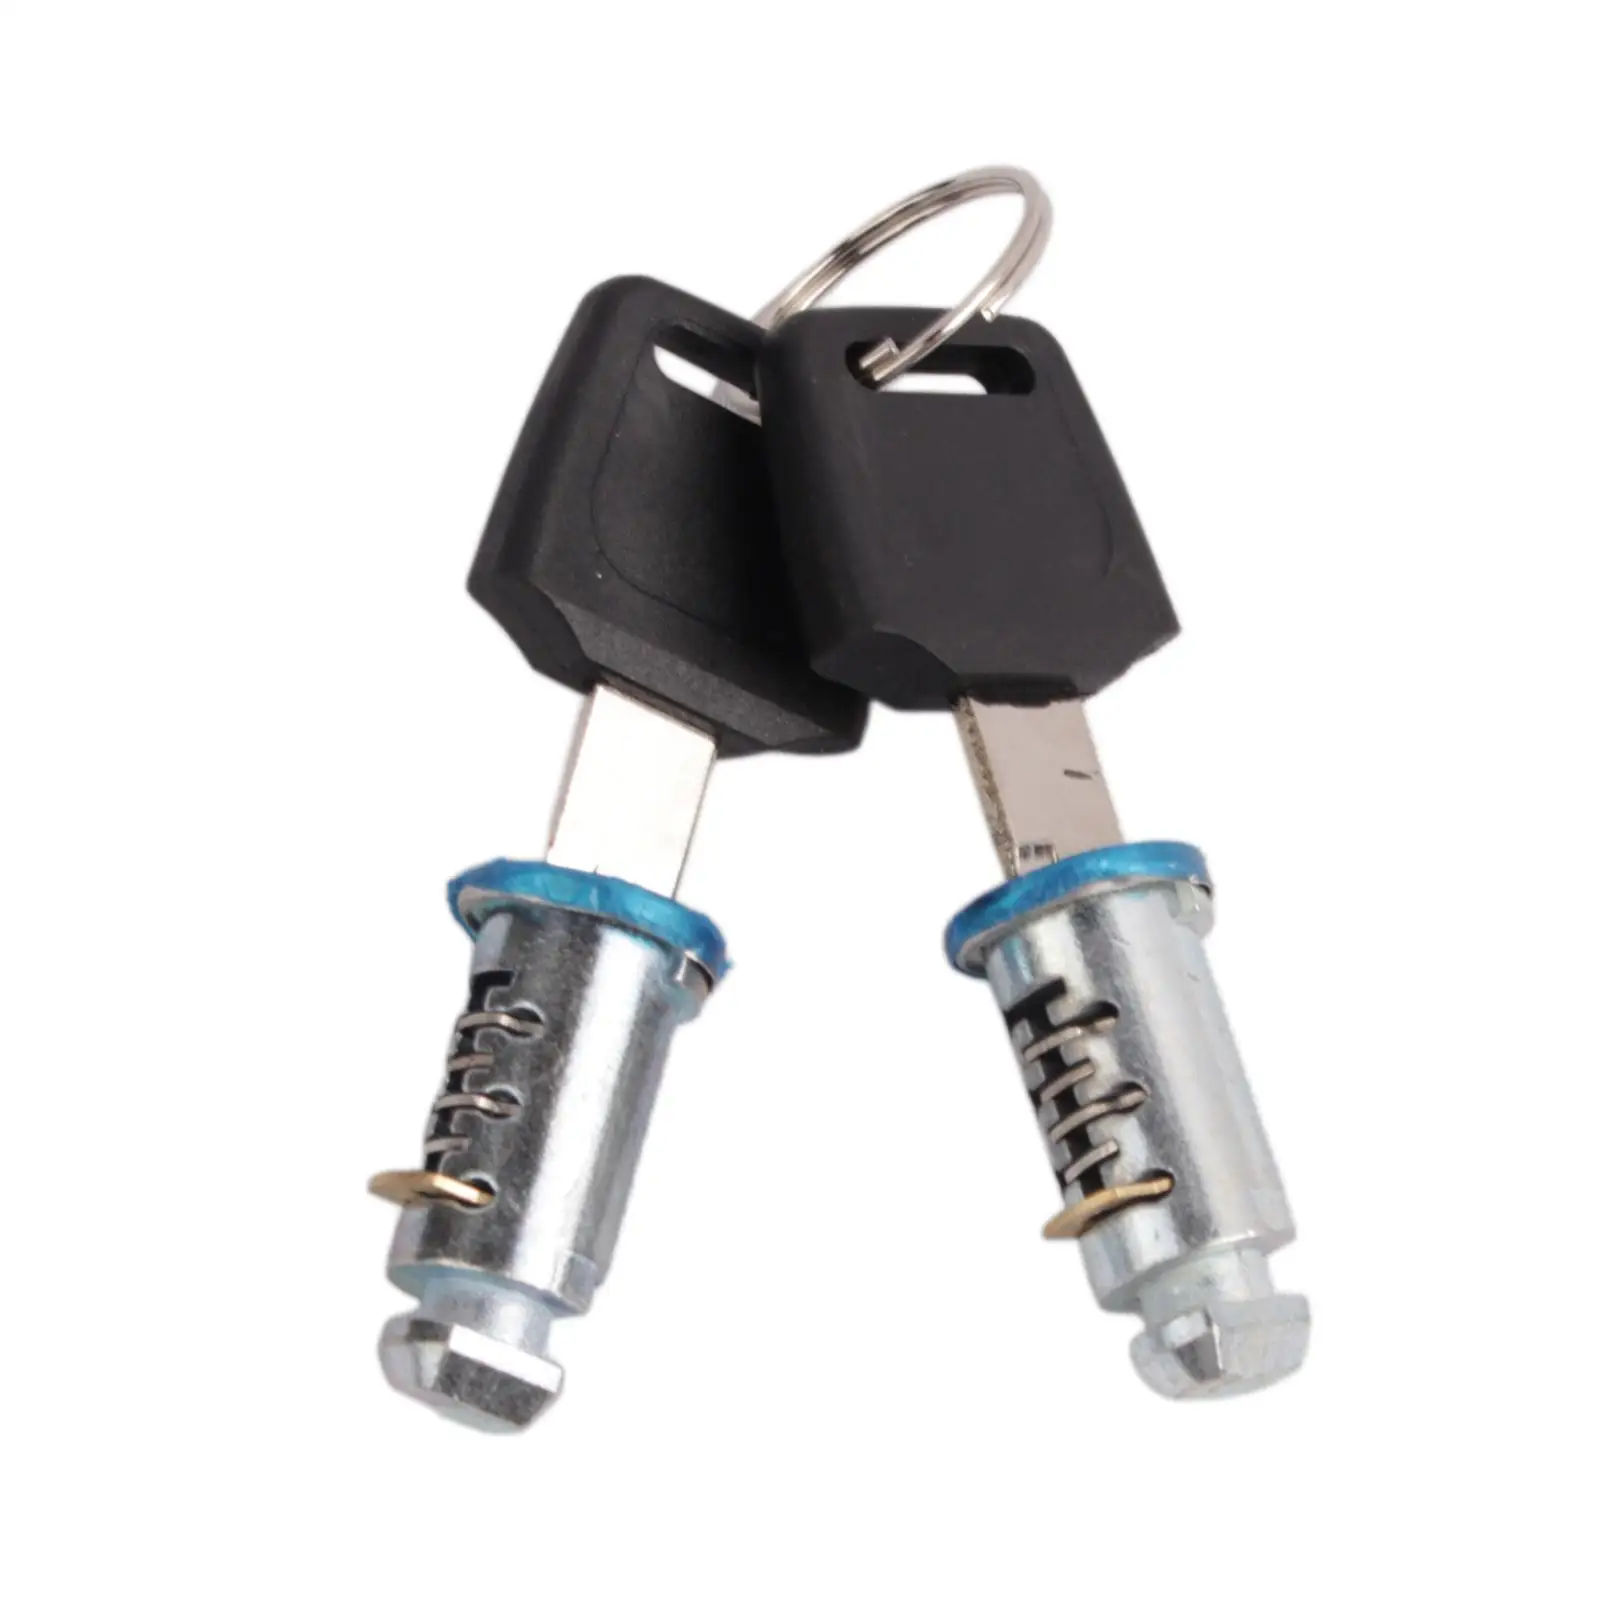 Serrature e chiavi per portapacchi da tetto kit chiavi di bloccaggio cilindro di blocco per accessorio per portapacchi portapacchi da tetto per auto